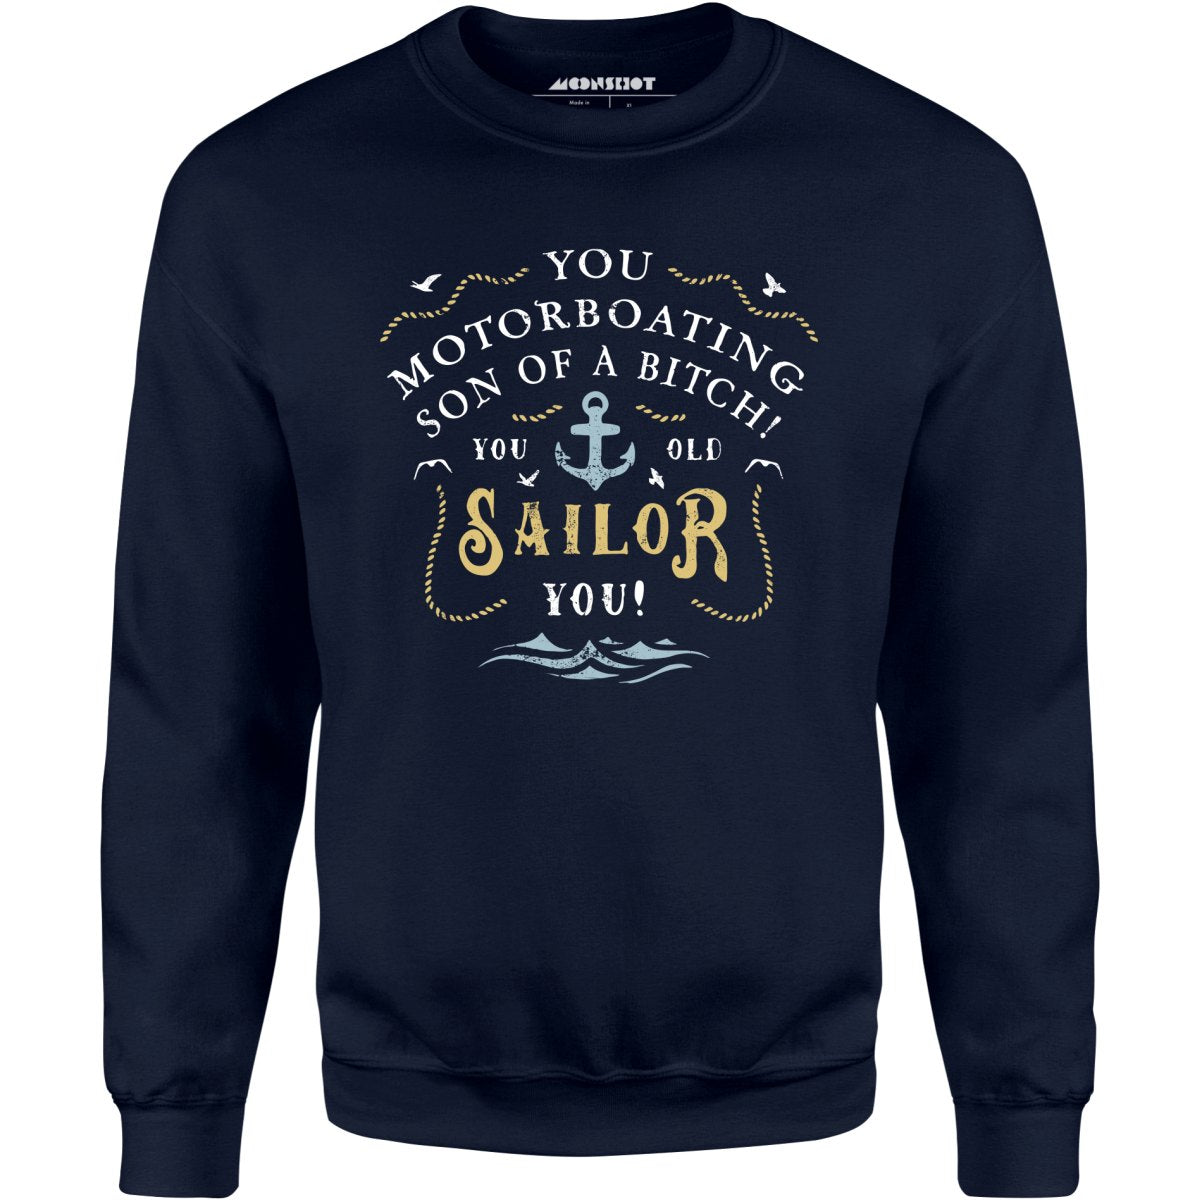 You Old Sailor You - Unisex Sweatshirt